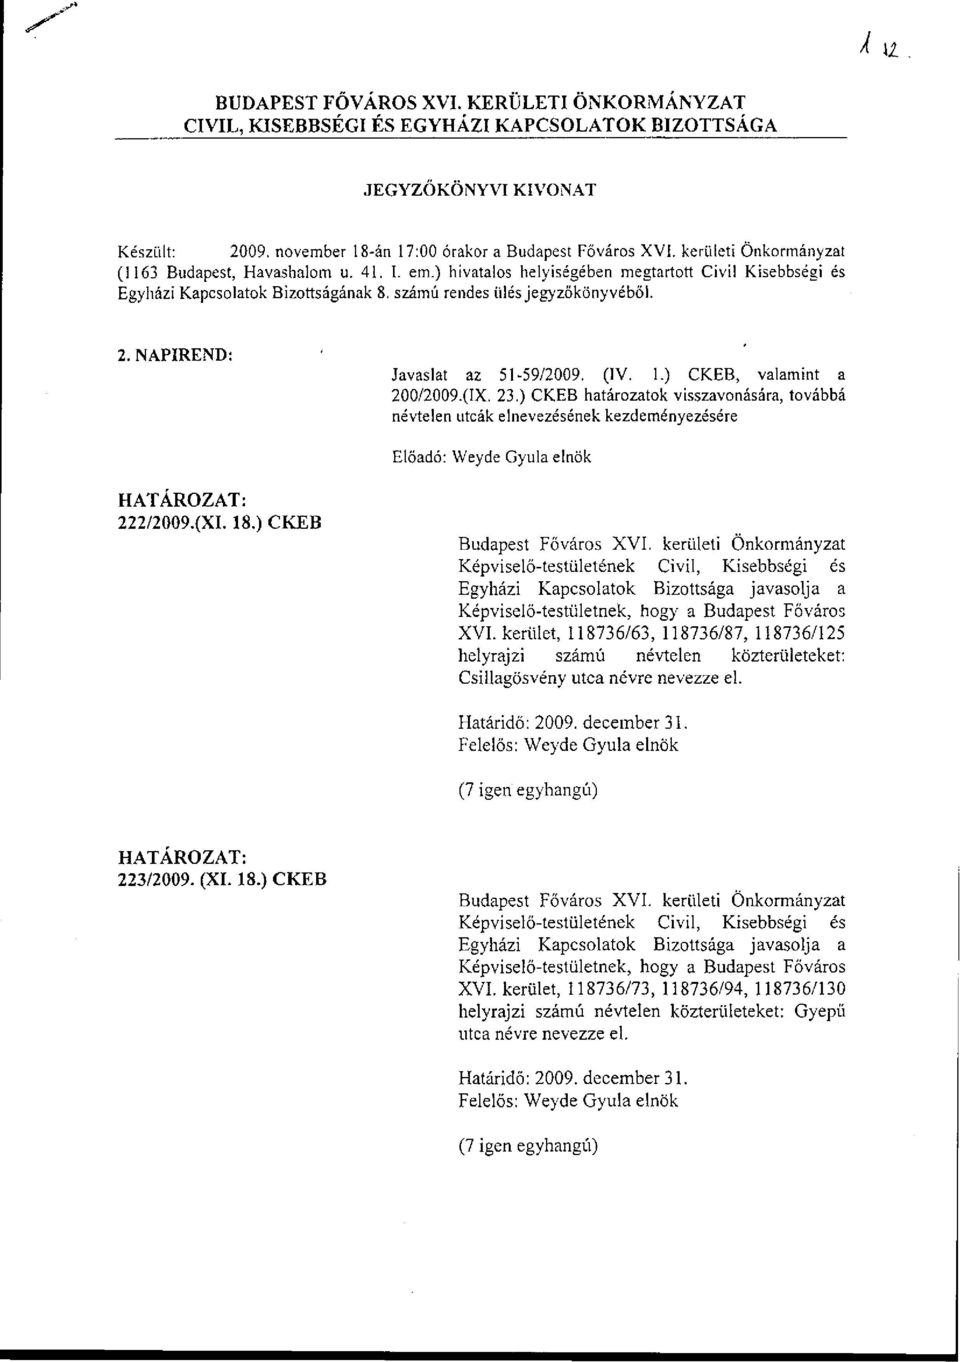 ) CKEB, valamint a 200/2009.(IX. 23.) CKEB határozatok visszavonására, továbbá névtelen utcák elnevezésének kezdeményezésére Előadó: Weyde Gyula elnök 222/2009.(XI. 18.) CKEB XVI.